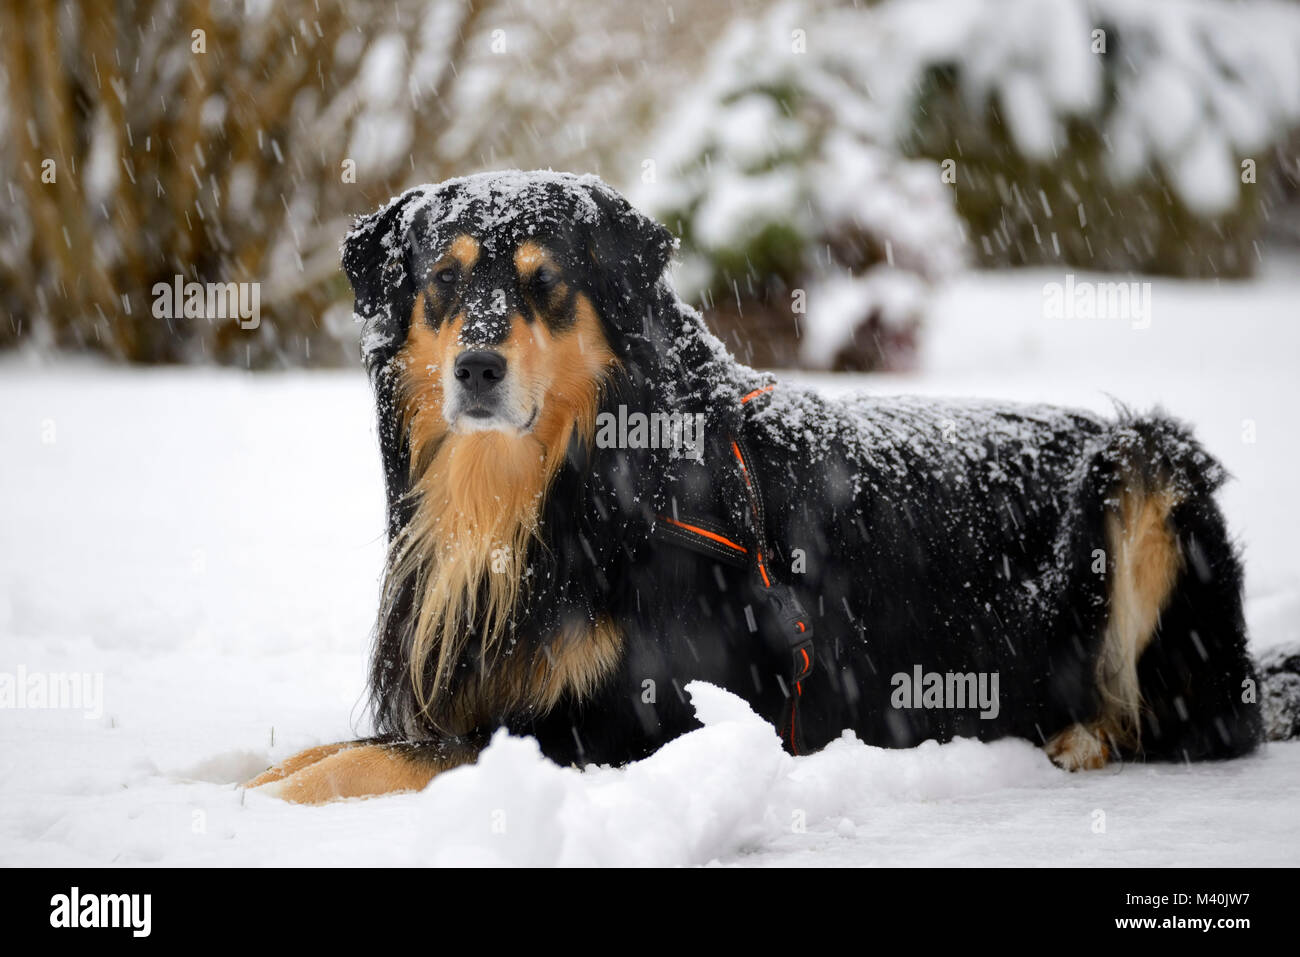 Onset of winter in Hamburg, dog is located in the snow, Wintereinbruch in Hamburg, Hund liegt im Schnee Stock Photo